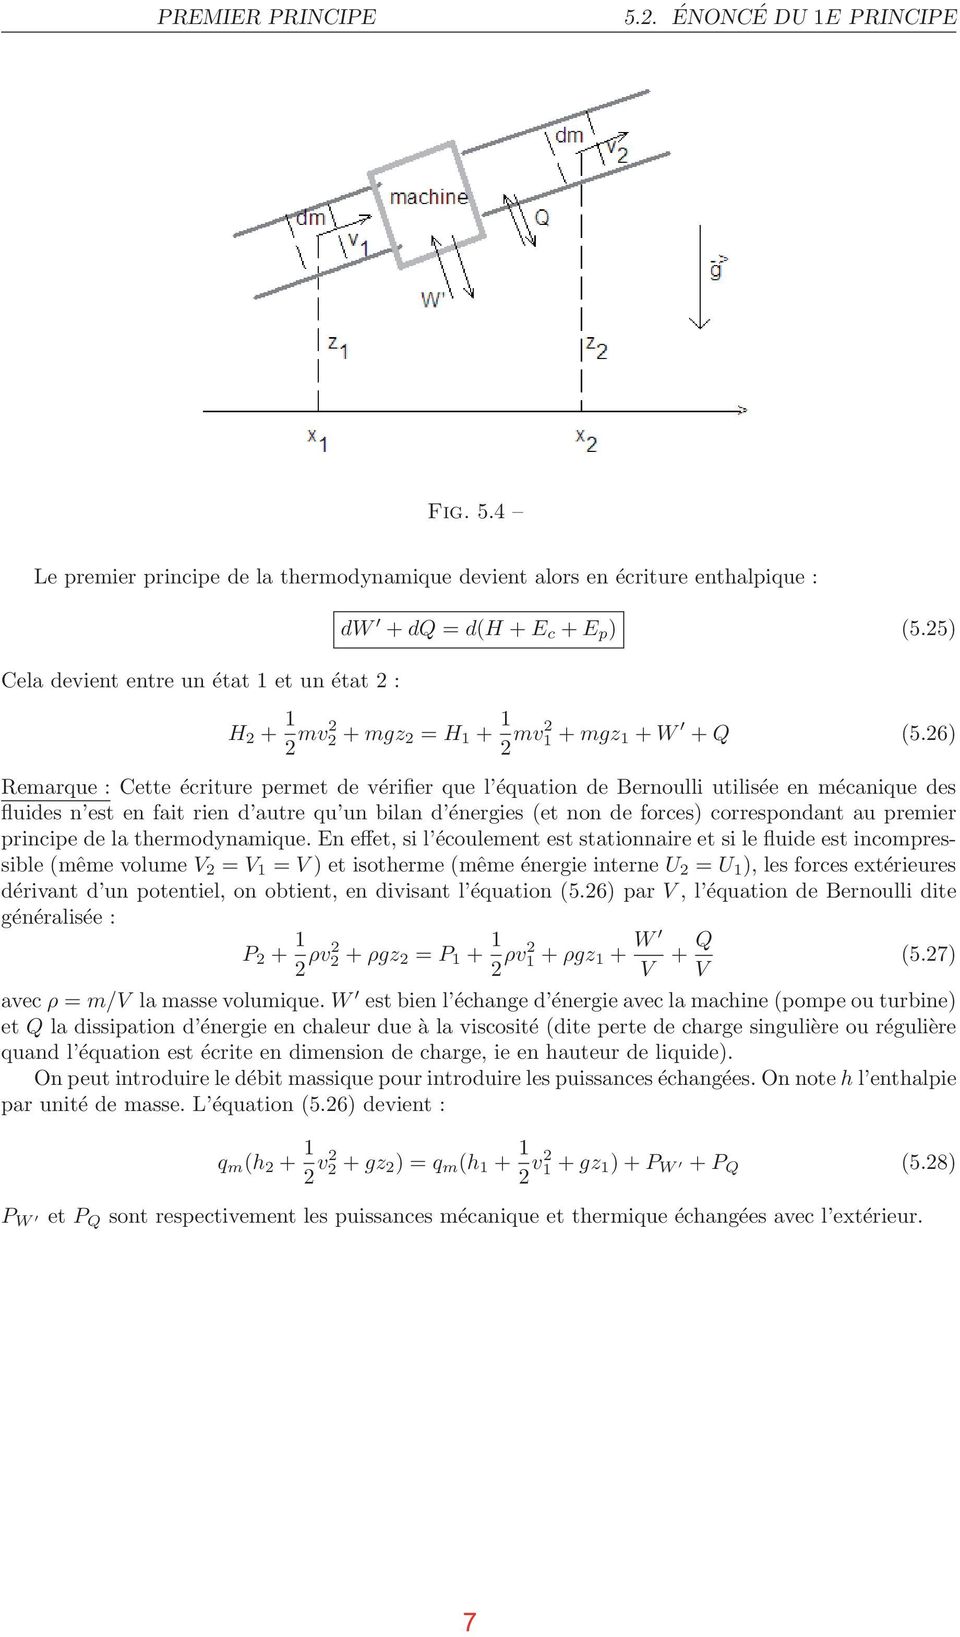 26) Remarque : Cette écriture permet de vérifier que l équation de Bernoulli utilisée en mécanique des fluides n est en fait rien d autre qu un bilan d énergies (et non de forces) correspondant au